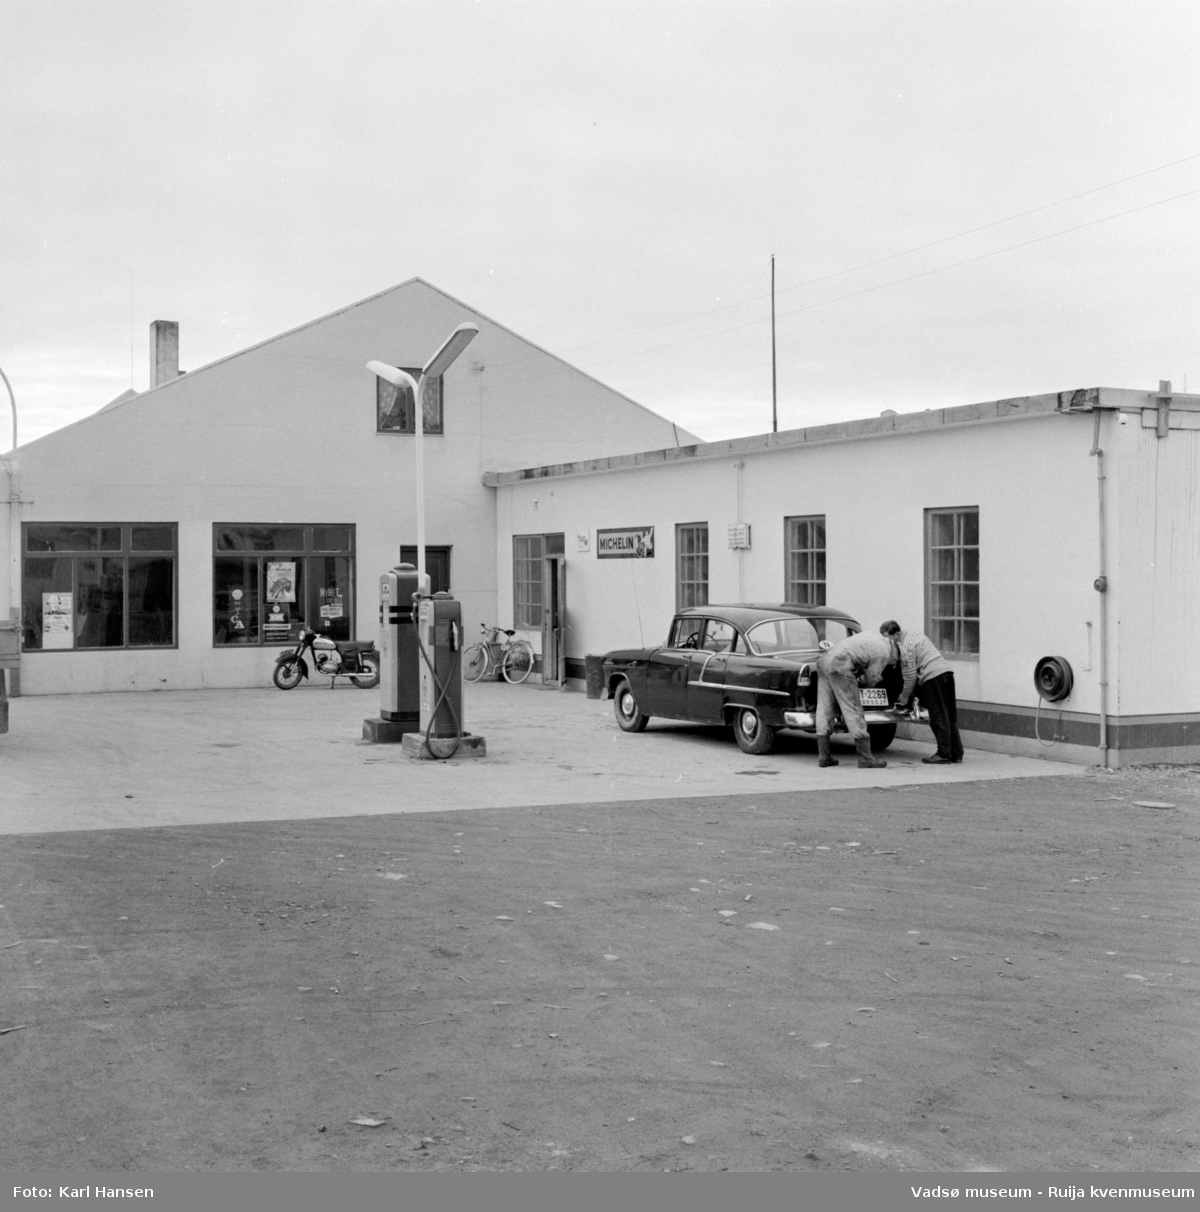 Vadsø sentrum 1959. Shell Bensinstasjon og tankanlegg i Tollbugata. Reklameskilt, moped, drivstoffpumper og en drosje i forkant av bygningen.